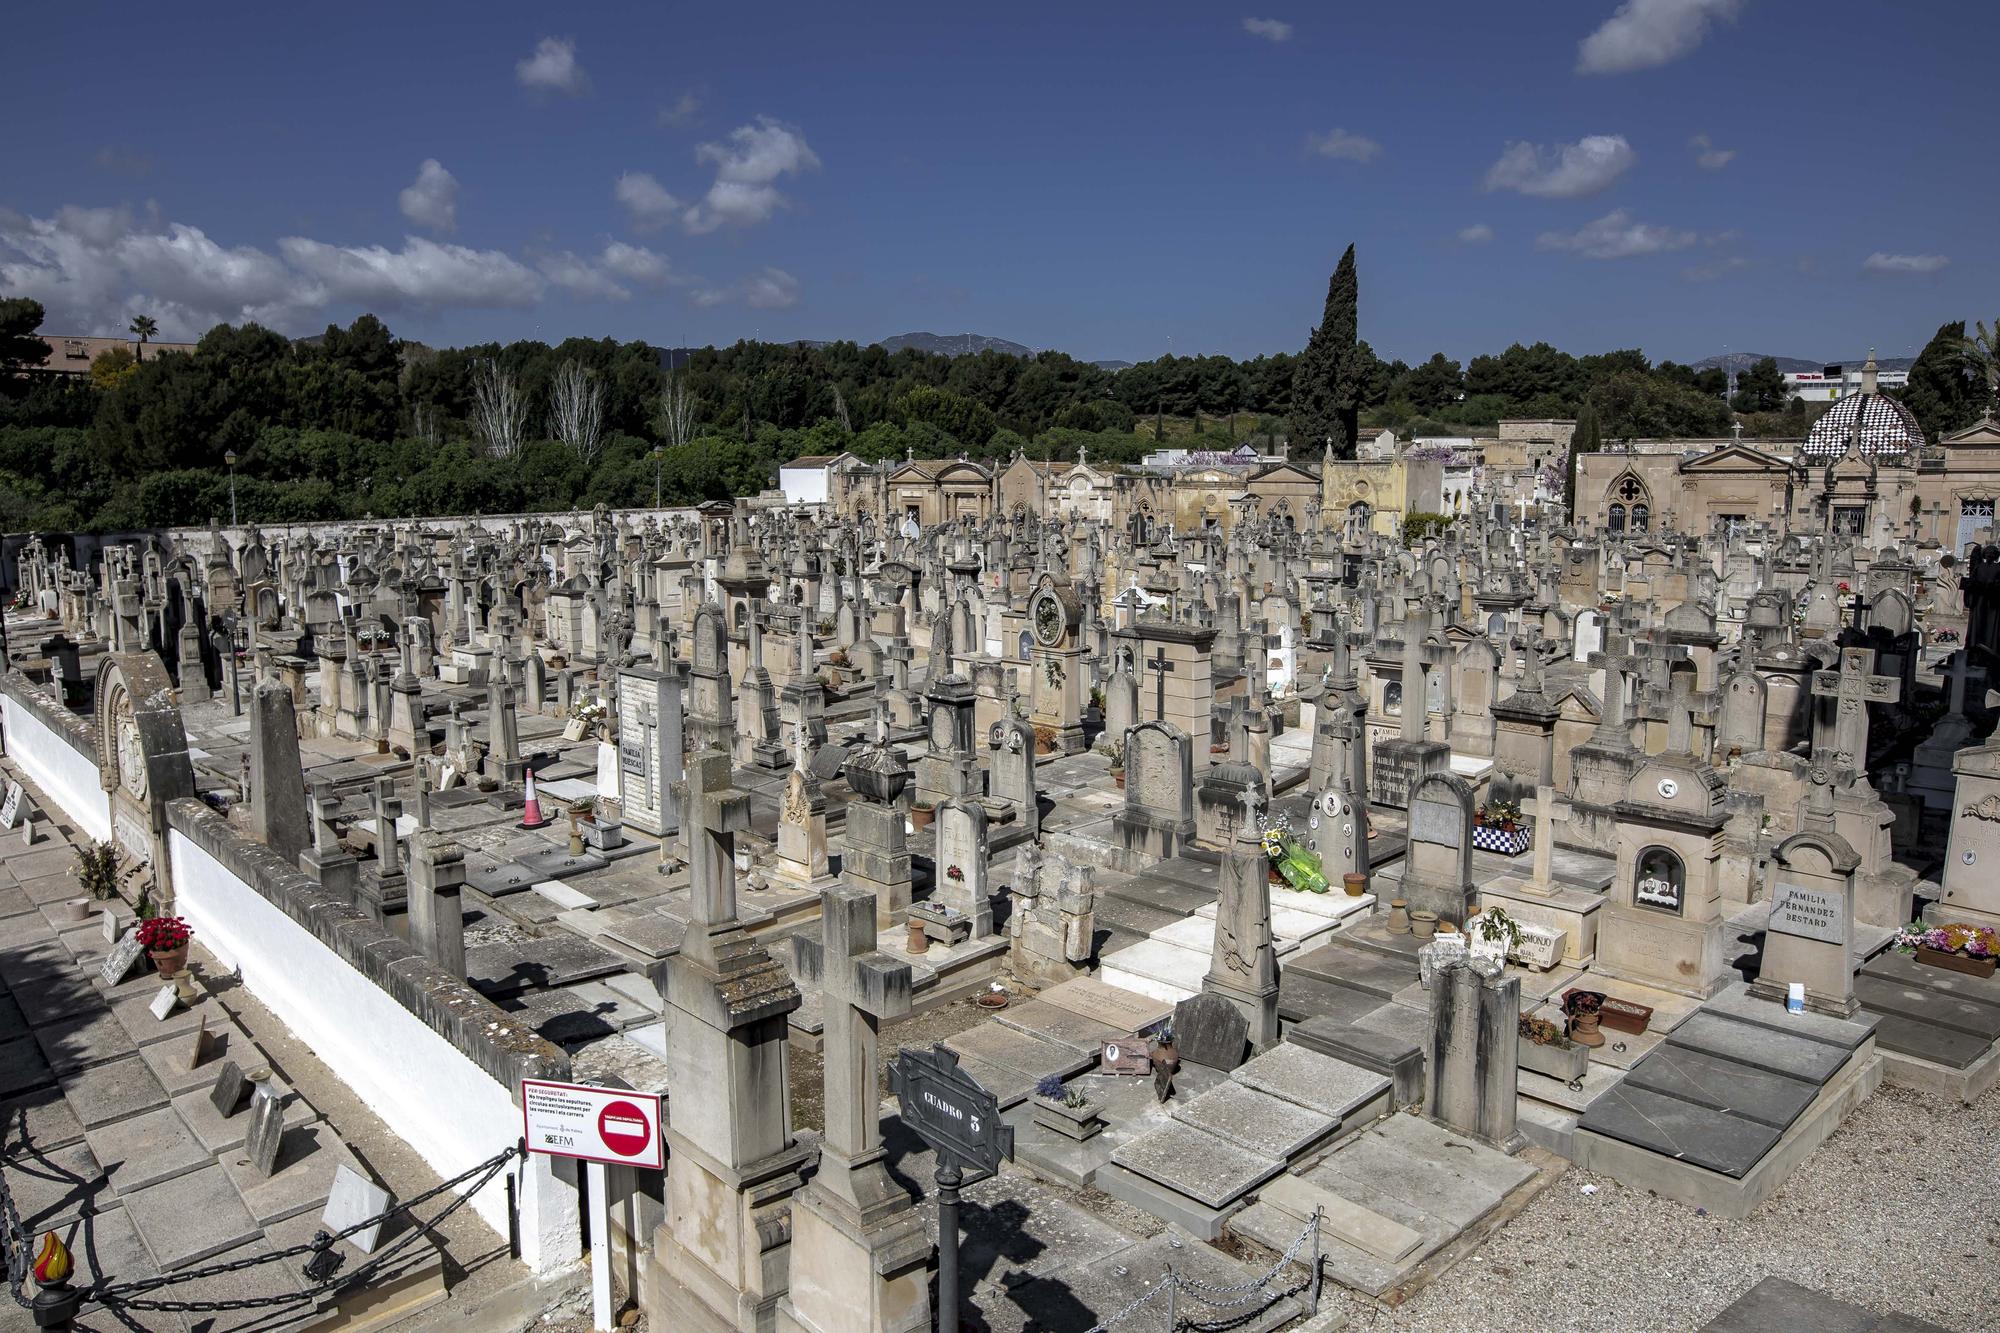 El cementerio de Palma acumula dos siglos de historia y arte